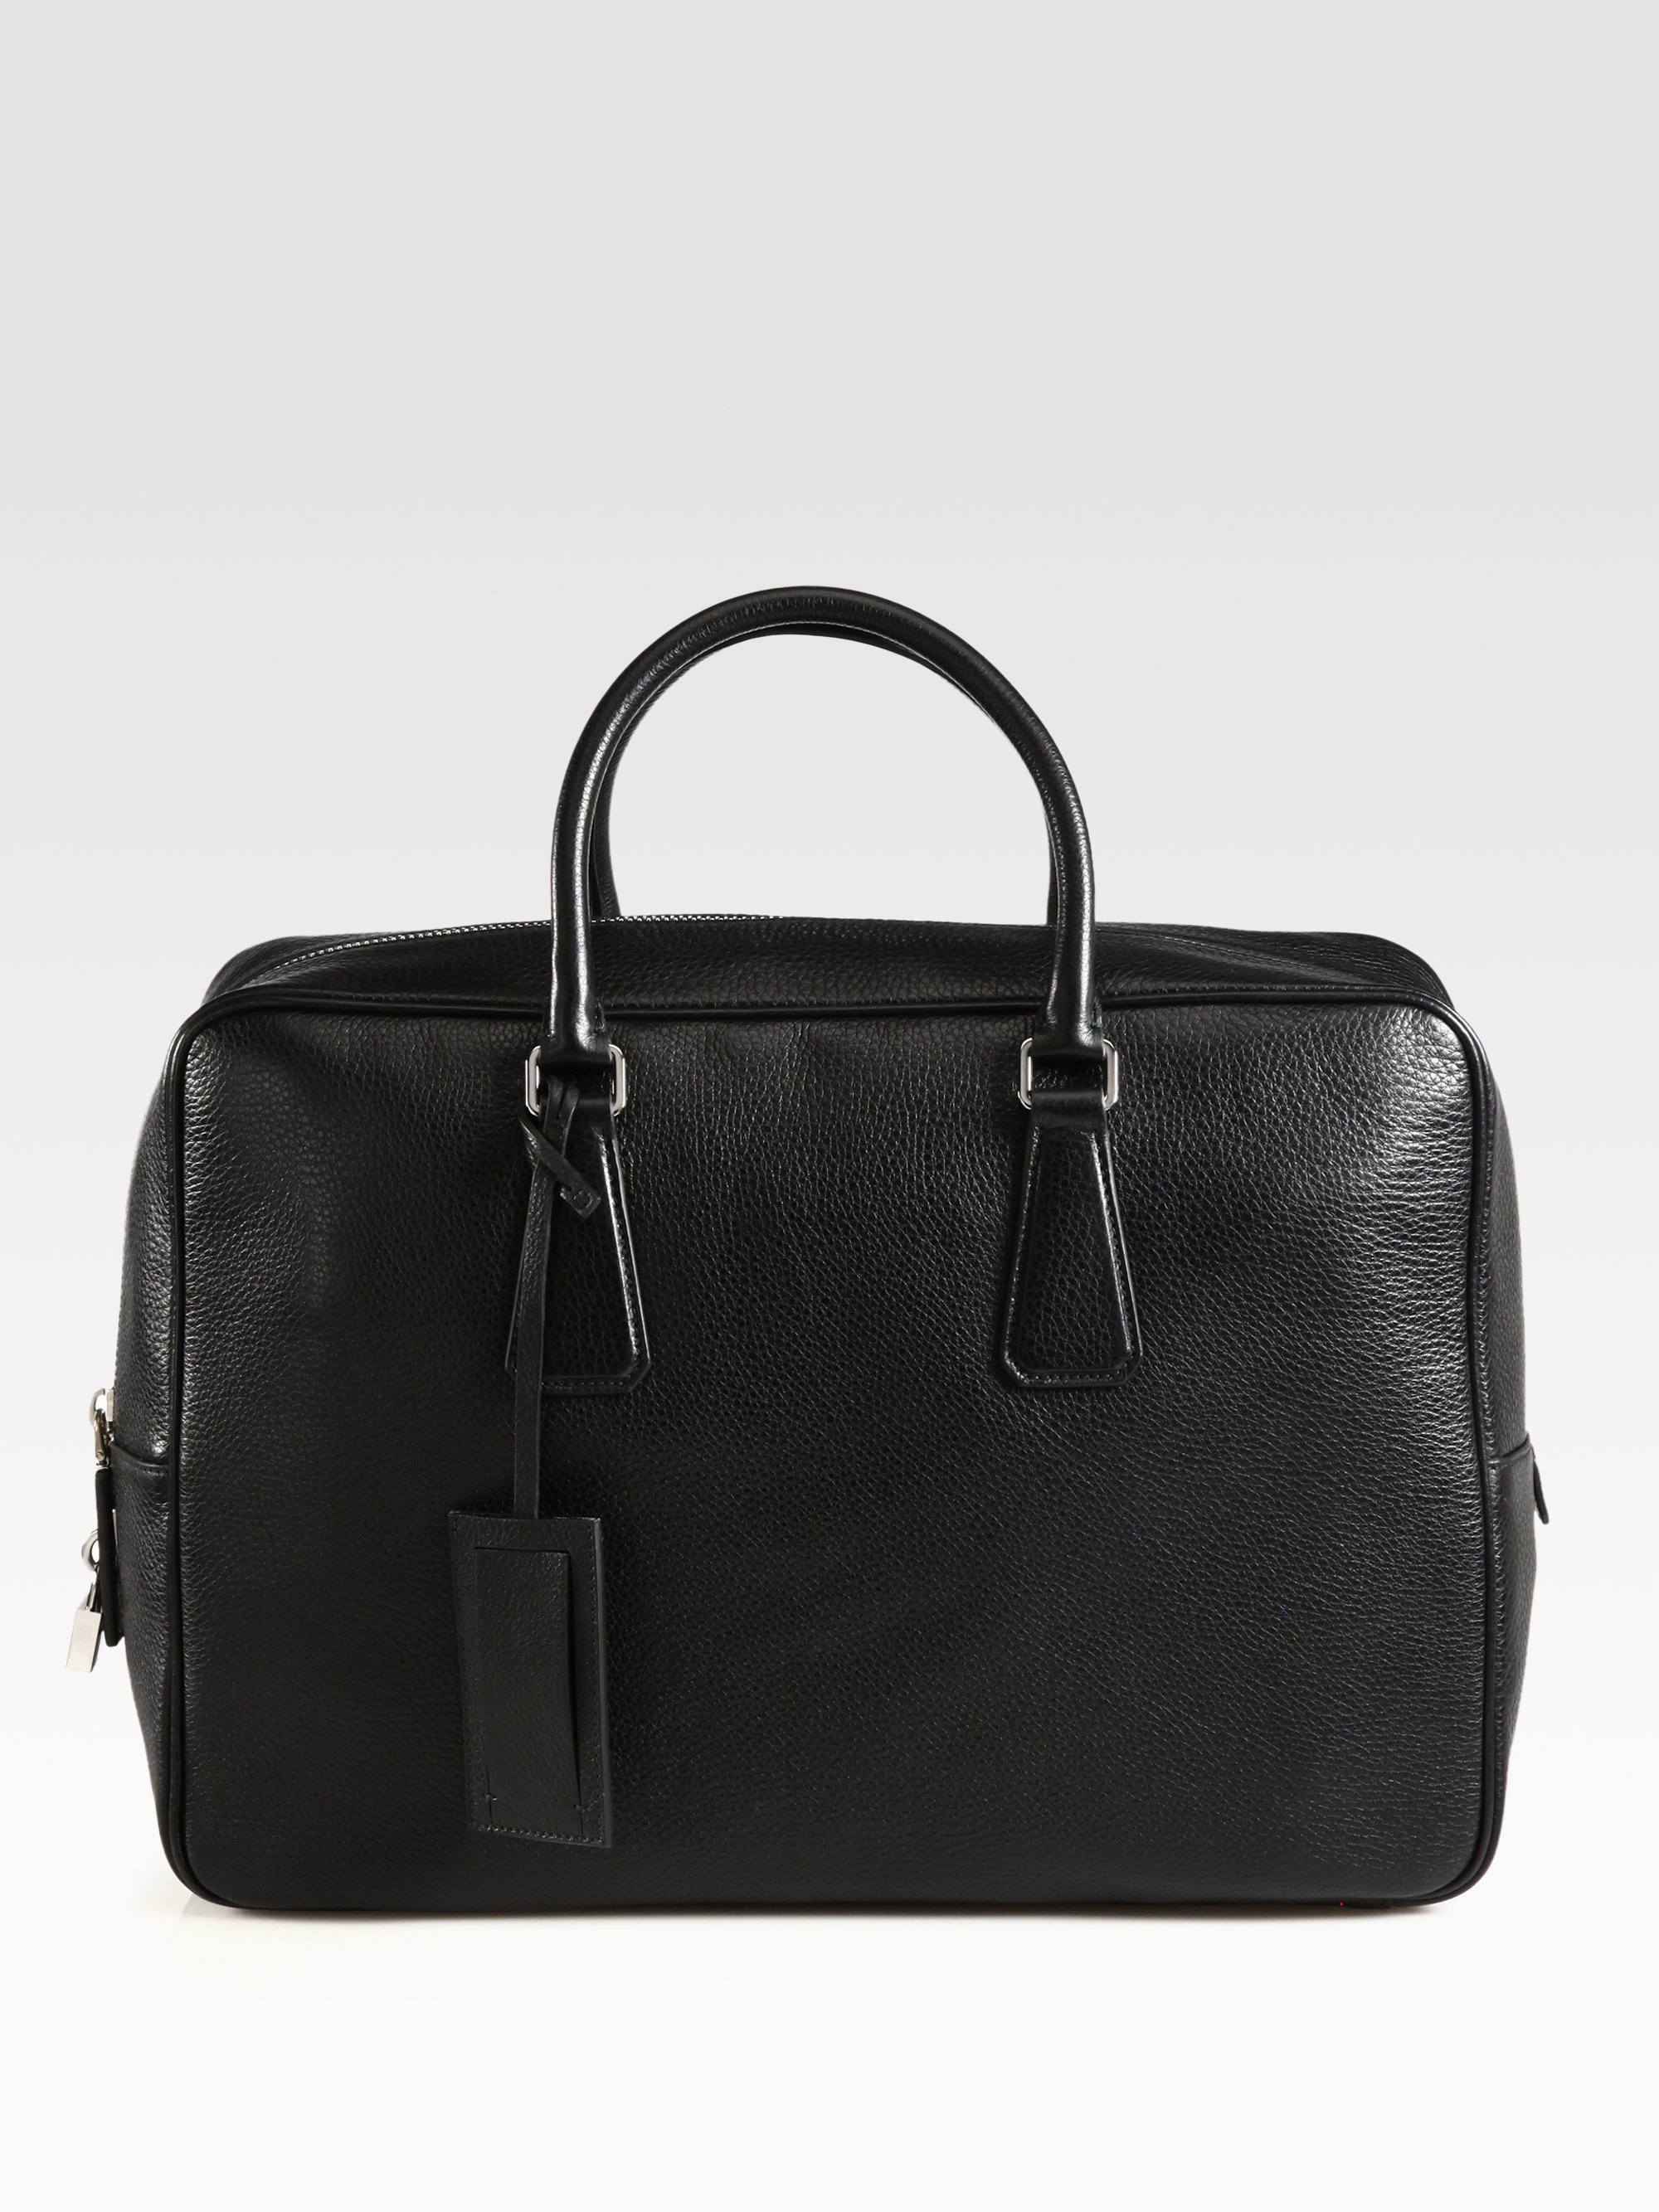 Lyst - Prada Borsa Viaggio Briefcase in Black for Men